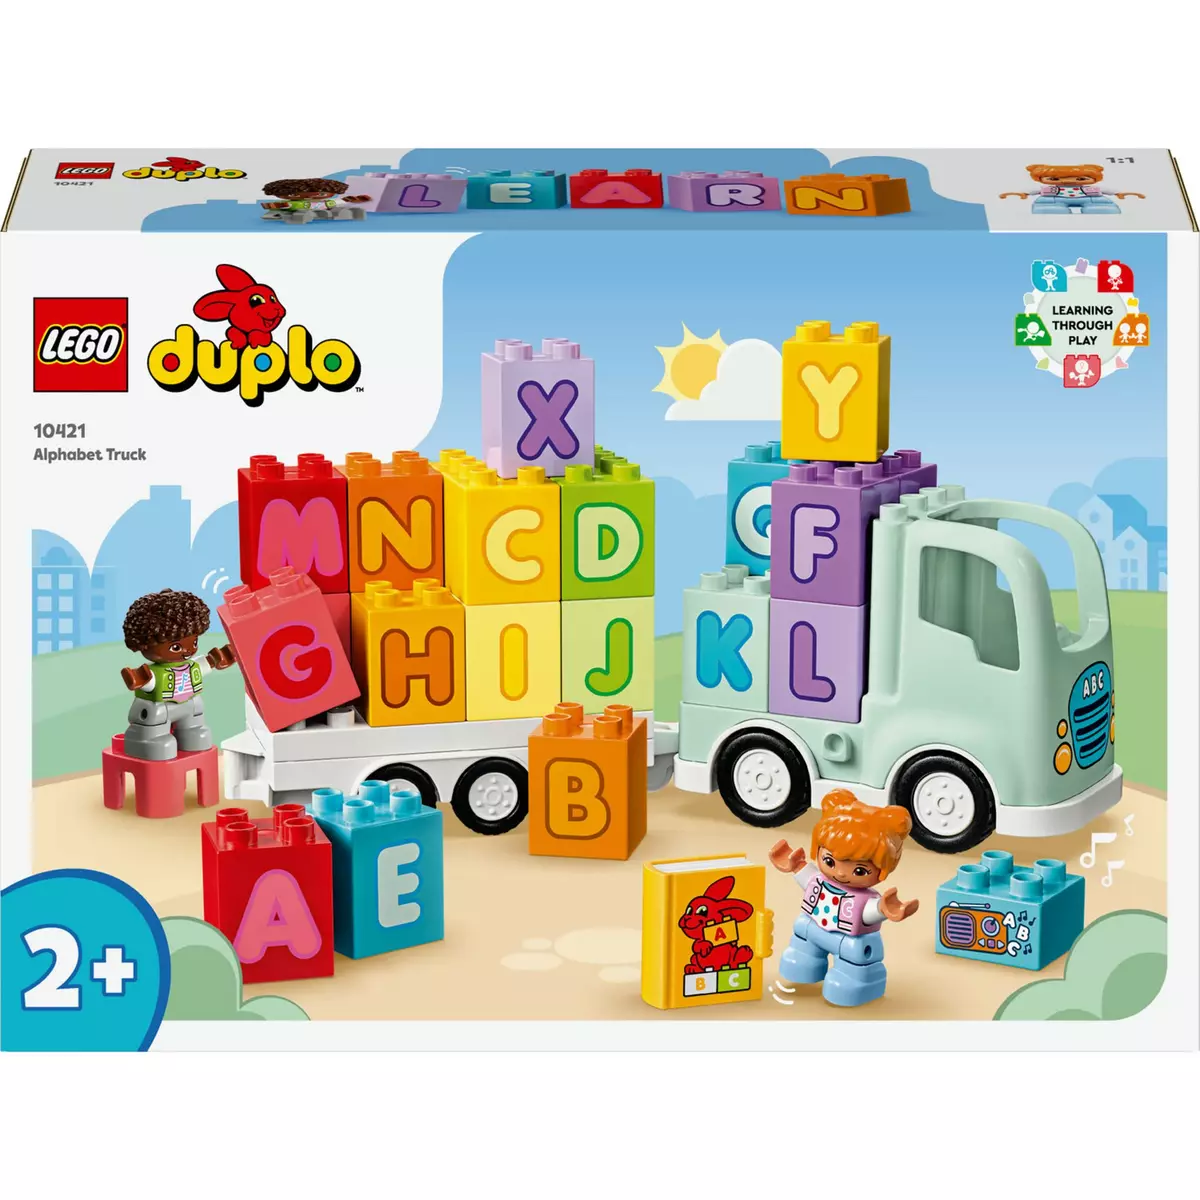 LEGO DUPLO Ma Ville 10421 Le Camion de l'Alphabet, Jouet d'Apprentissage de l'Alphabet pour Enfants Dès 2 Ans